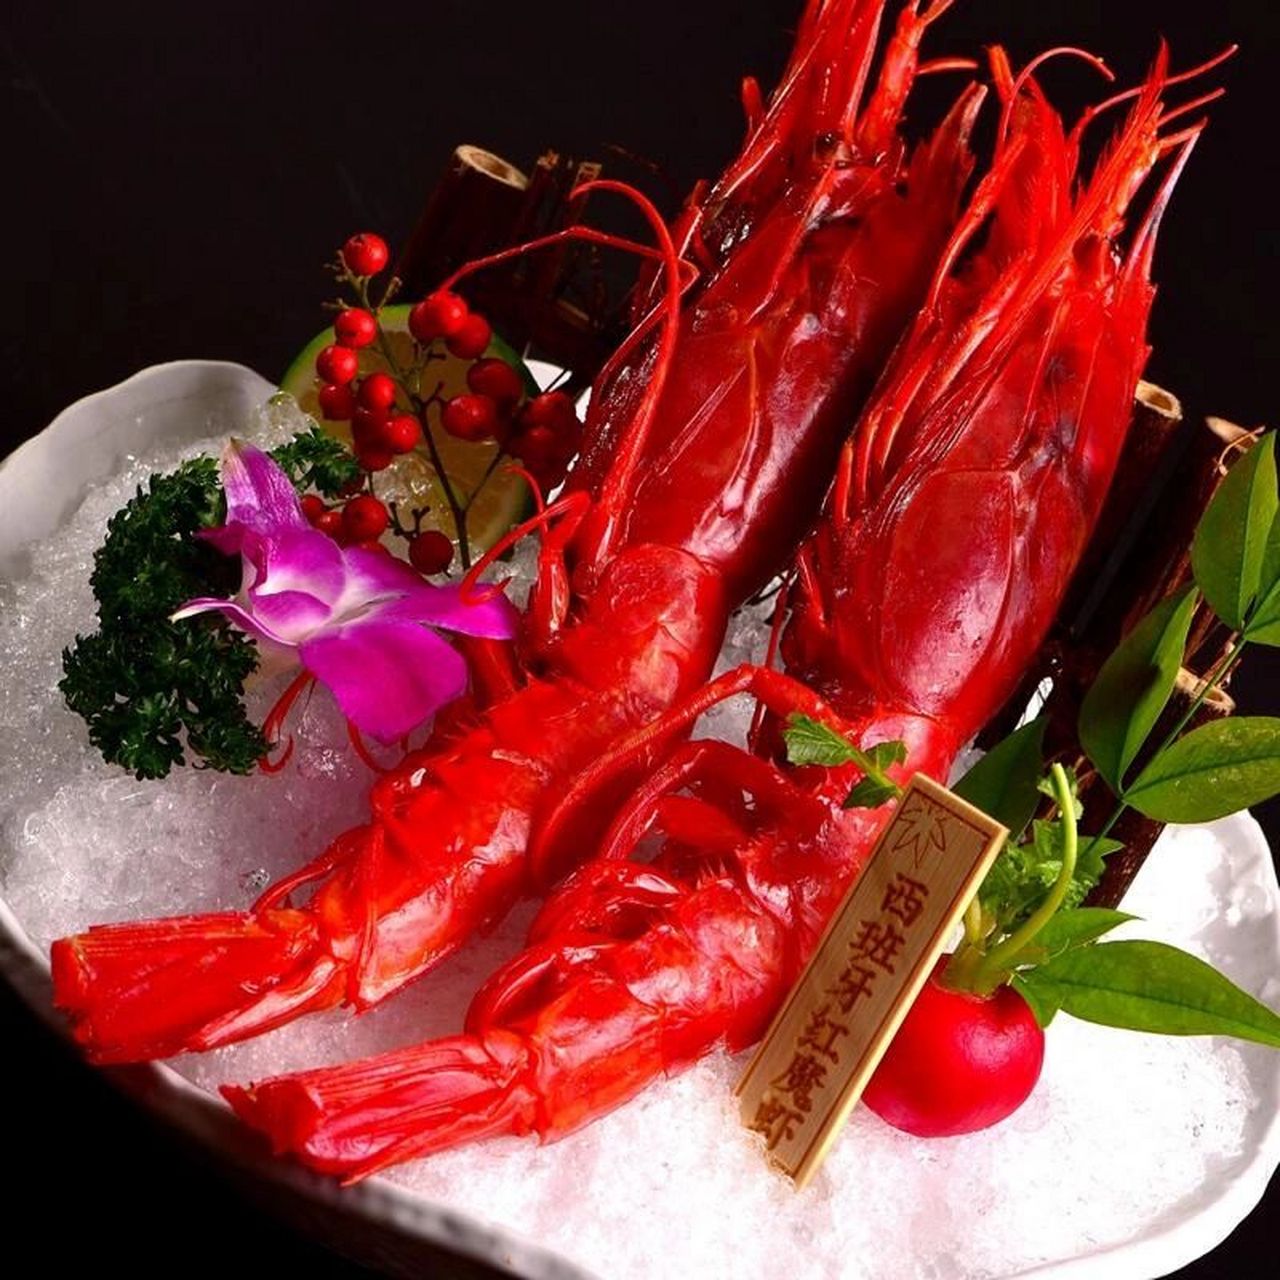 隐·缘起———西班牙红魔虾 红魔虾主要产地是西班牙